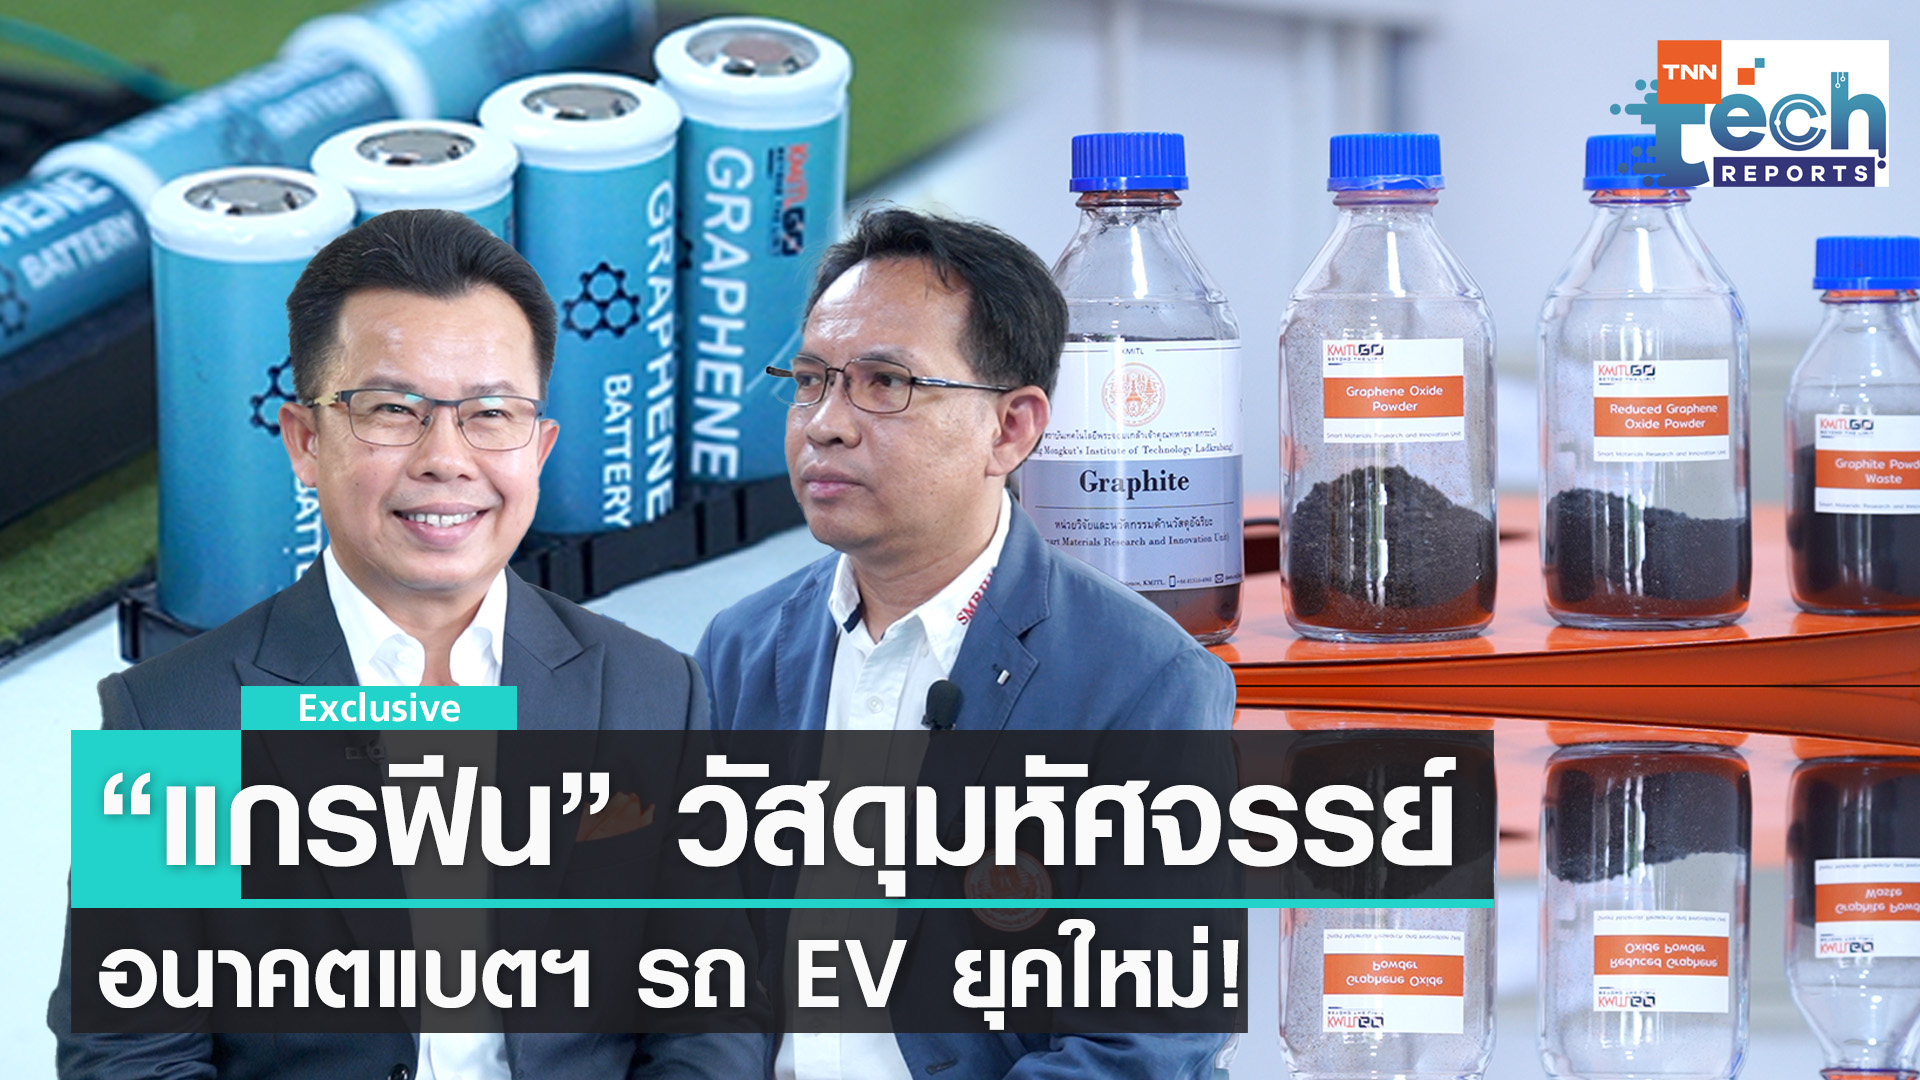 “แบตเตอรี่กราฟีน” อนาคตใหม่ของแบตเตอรี่รถ EV  ฝีมือคนไทย !! | TNN Tech Reports 